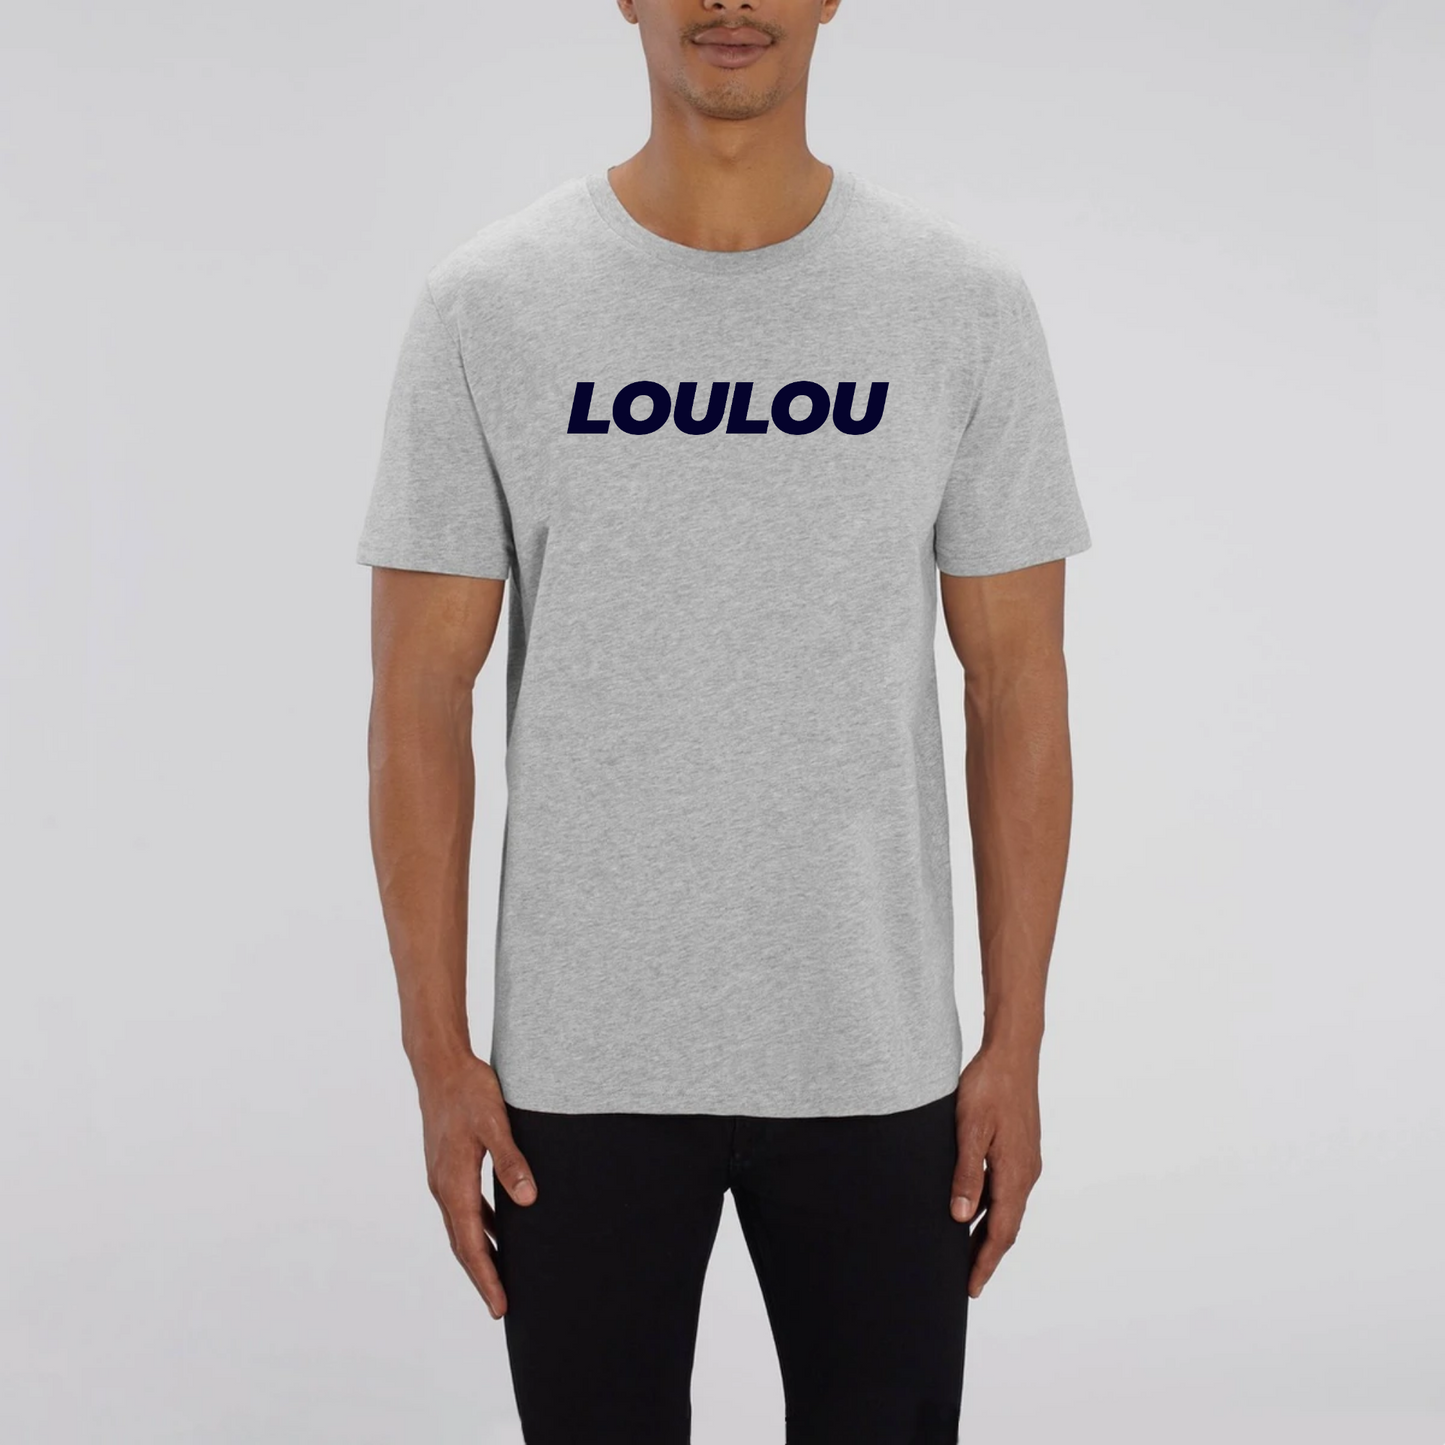 t-shirt loulou, T-French, t-shirt homme, coton bio, t-shirt saint valentin, t-shirt surnom, t-shirt humour, Gris